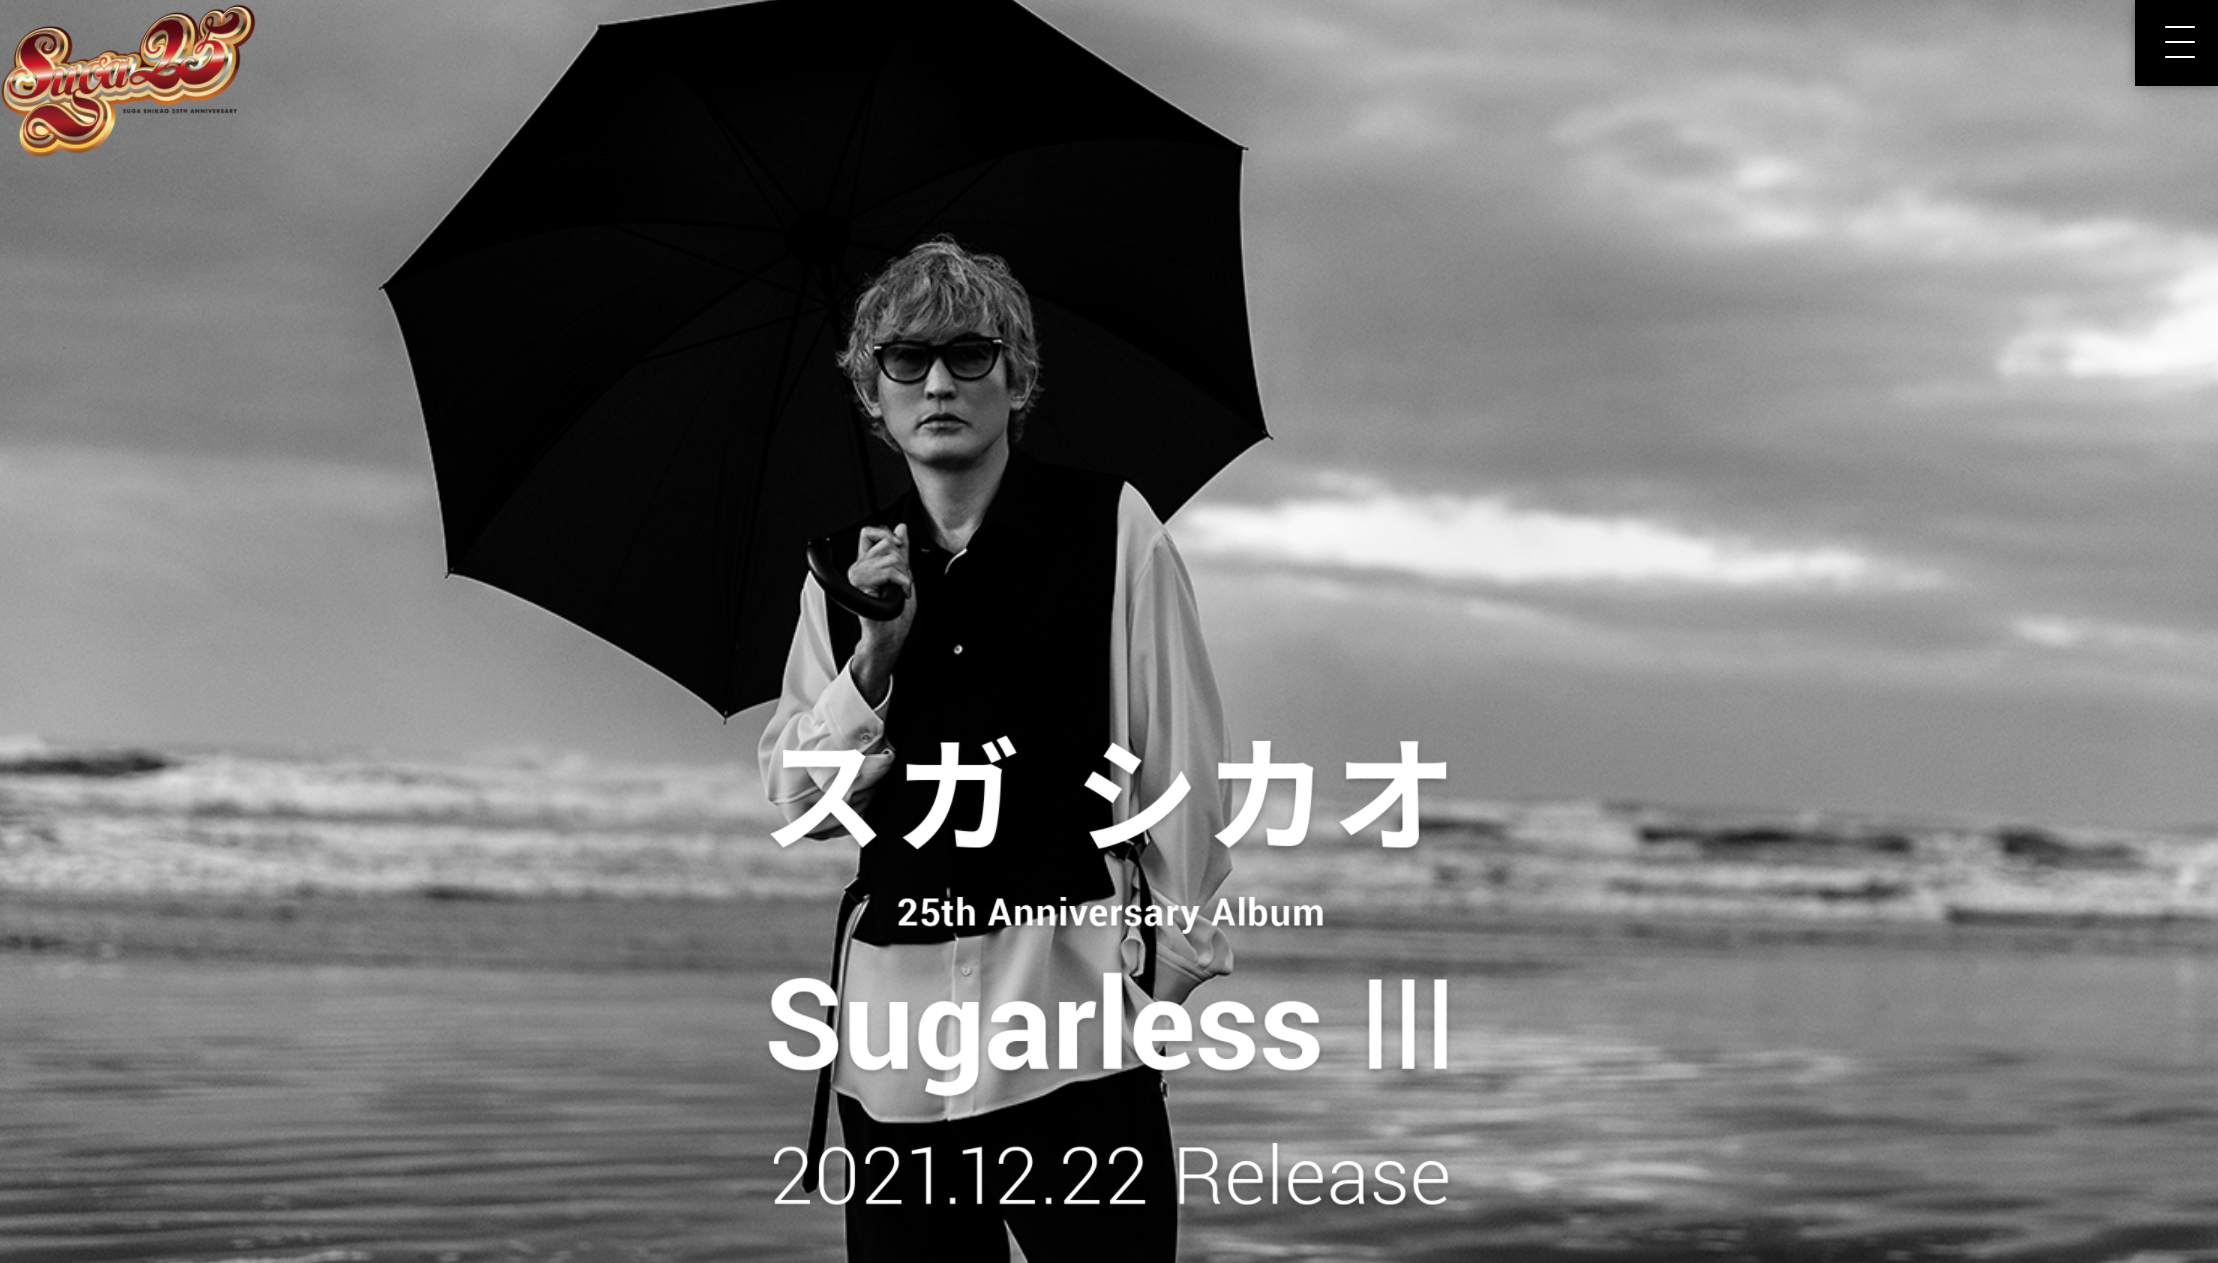 B'z松本孝弘がプロデュースで参加したスガ シカオ『Sugarless Ⅲ』の公式サイトでの案内画像